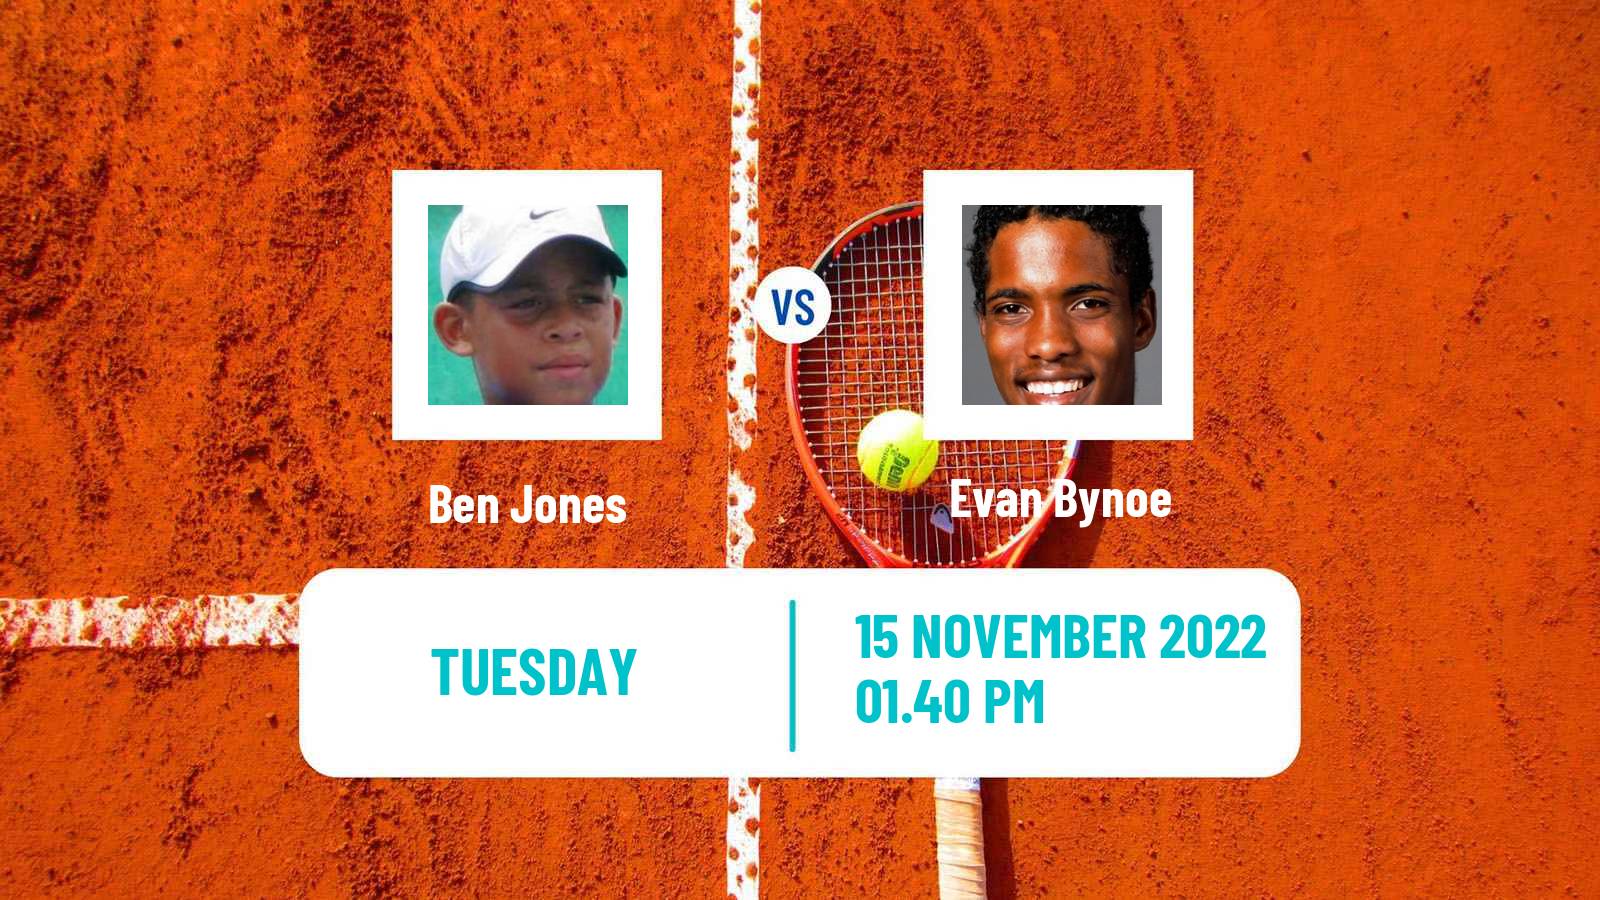 Tennis ITF Tournaments Ben Jones - Evan Bynoe